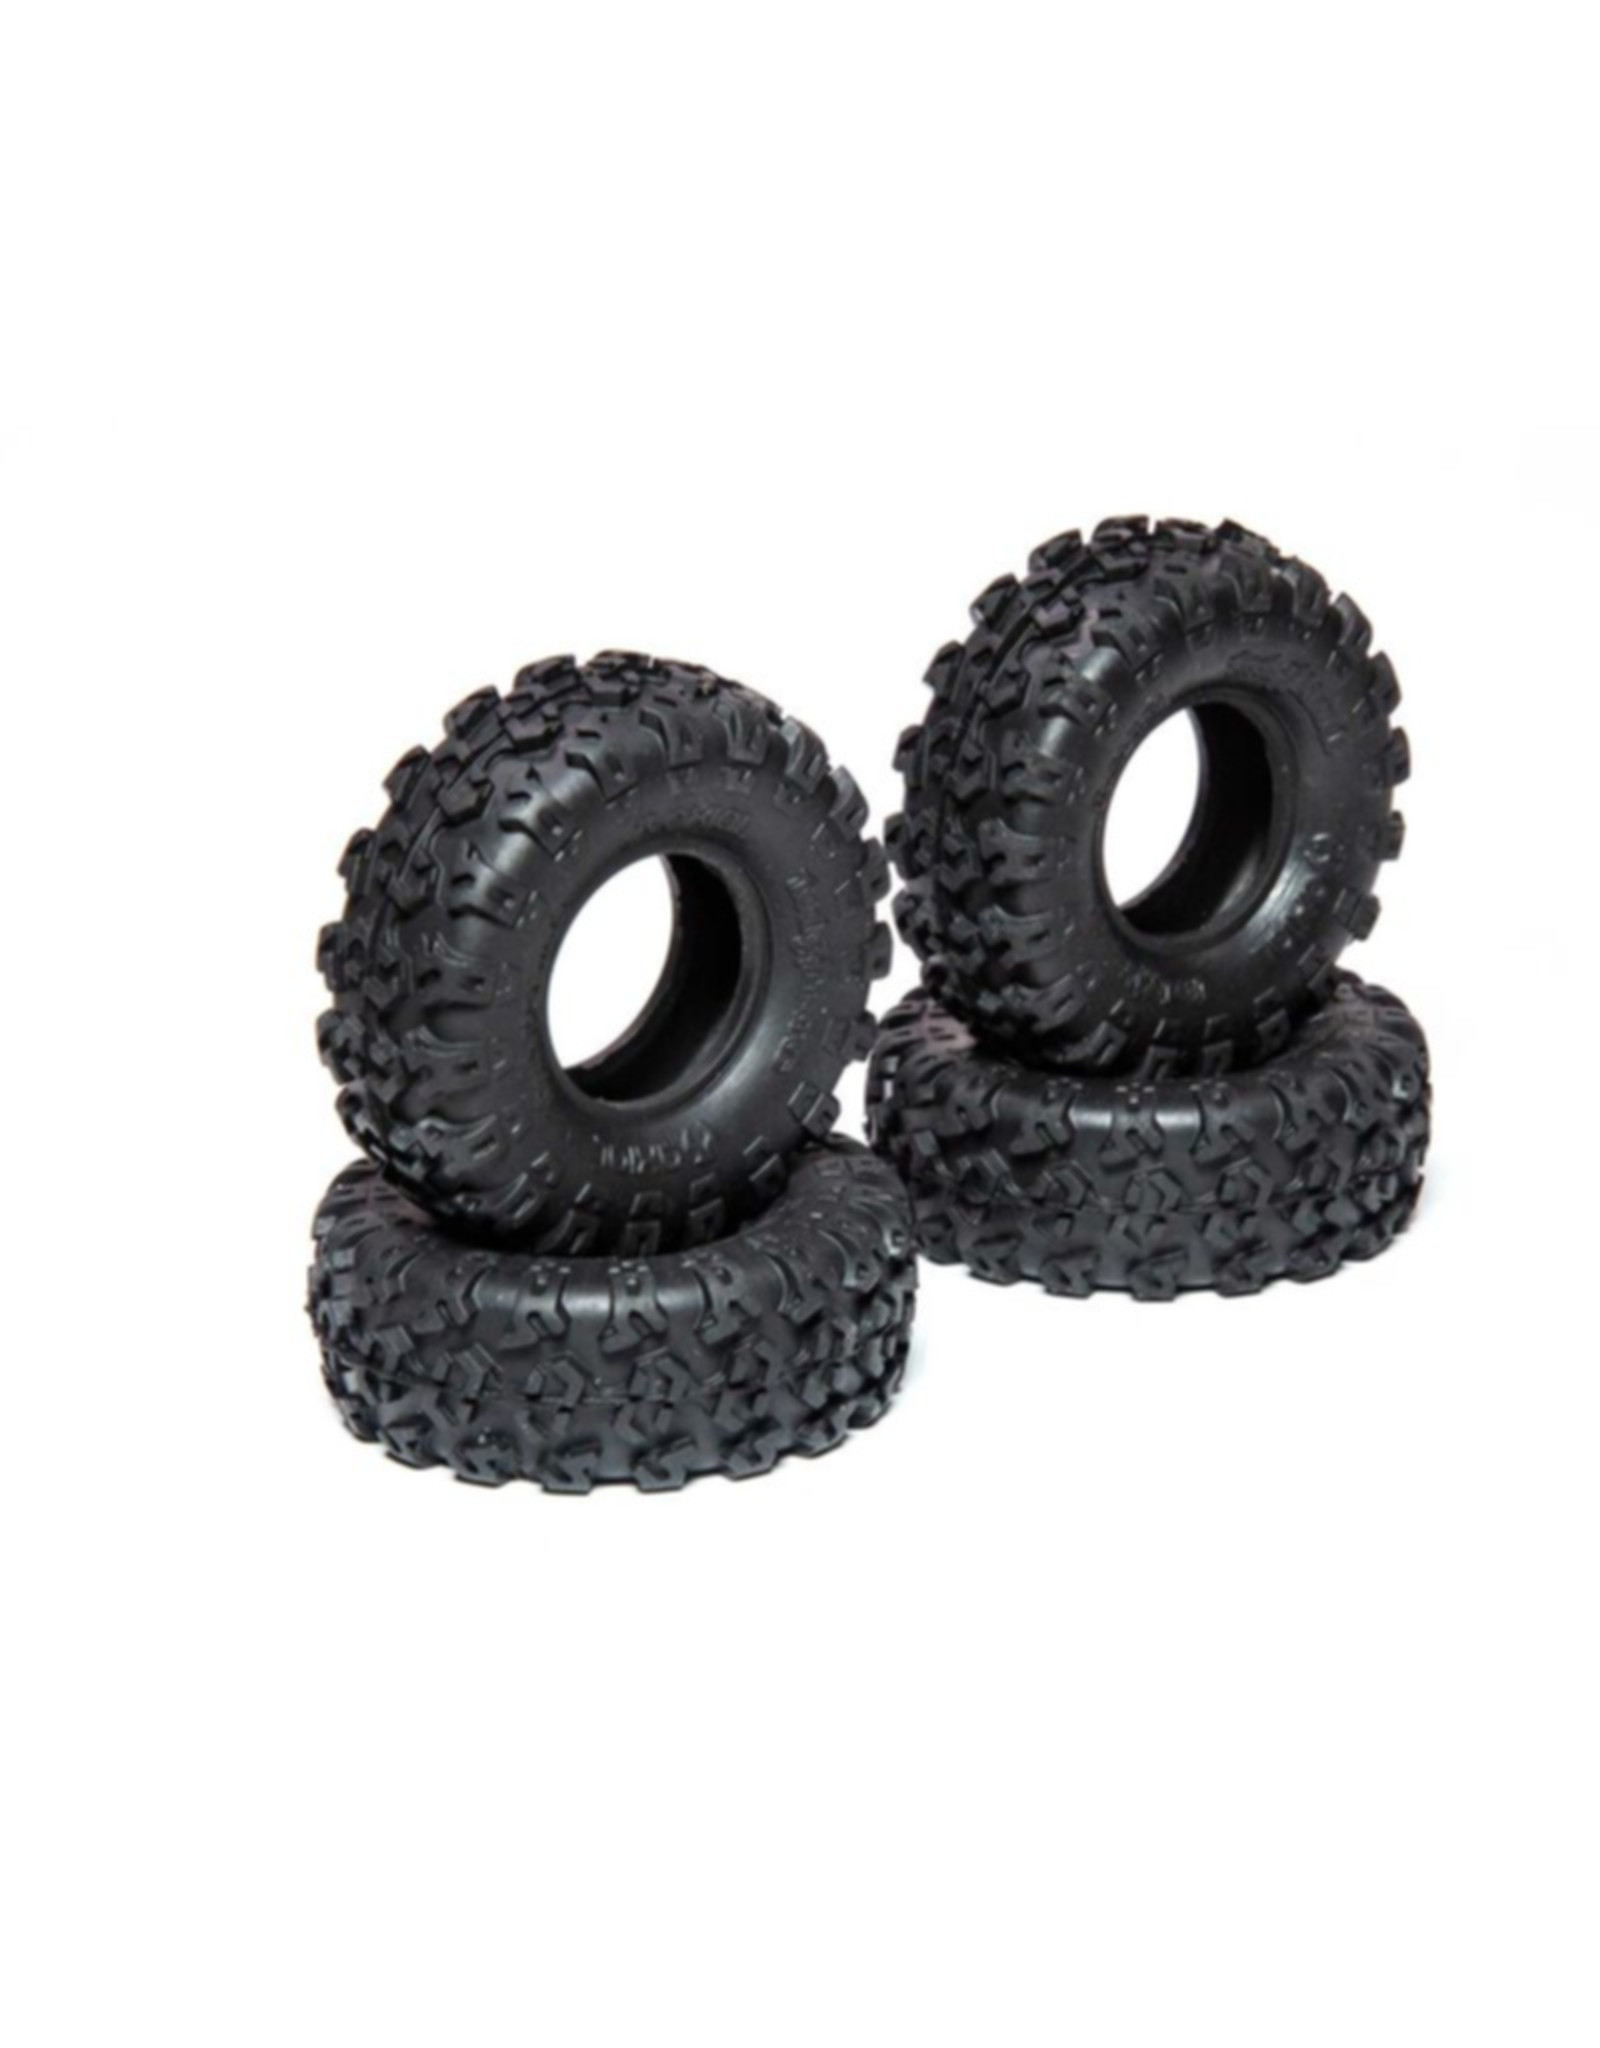 Axial AXI40003		1.0 Rock Lizards Tires (4pcs): SCX24